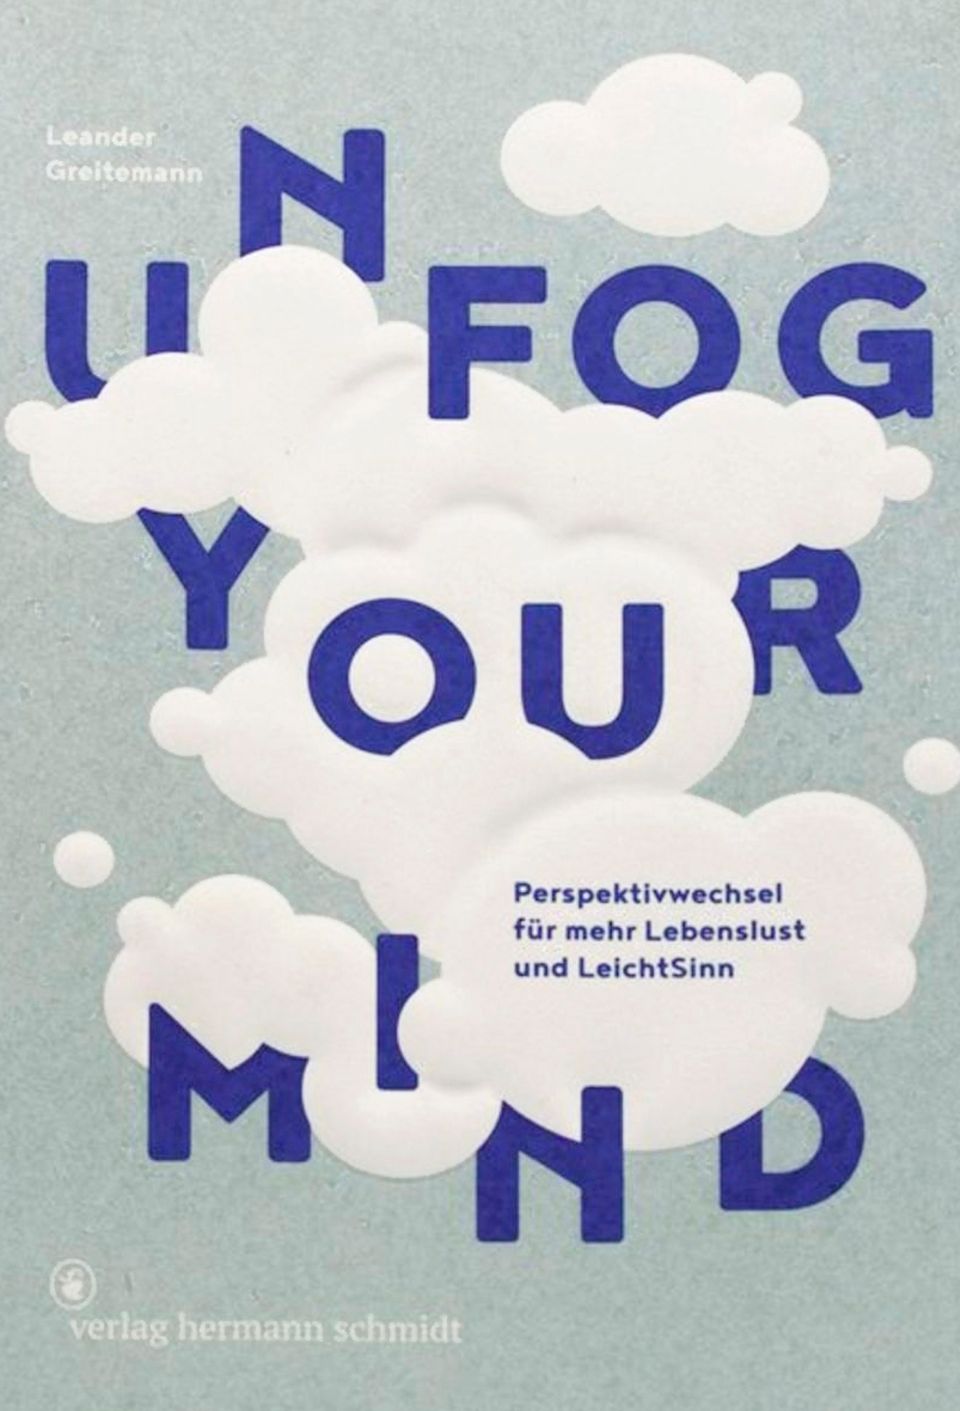 Buchtipp: Leander Greitemann: "Unfog your mind – Perspektivwechsel für mehr Lebenslust und LeichtSinn", 224 Seiten, 29,80 Euro, Verlag Hermann Schmidt